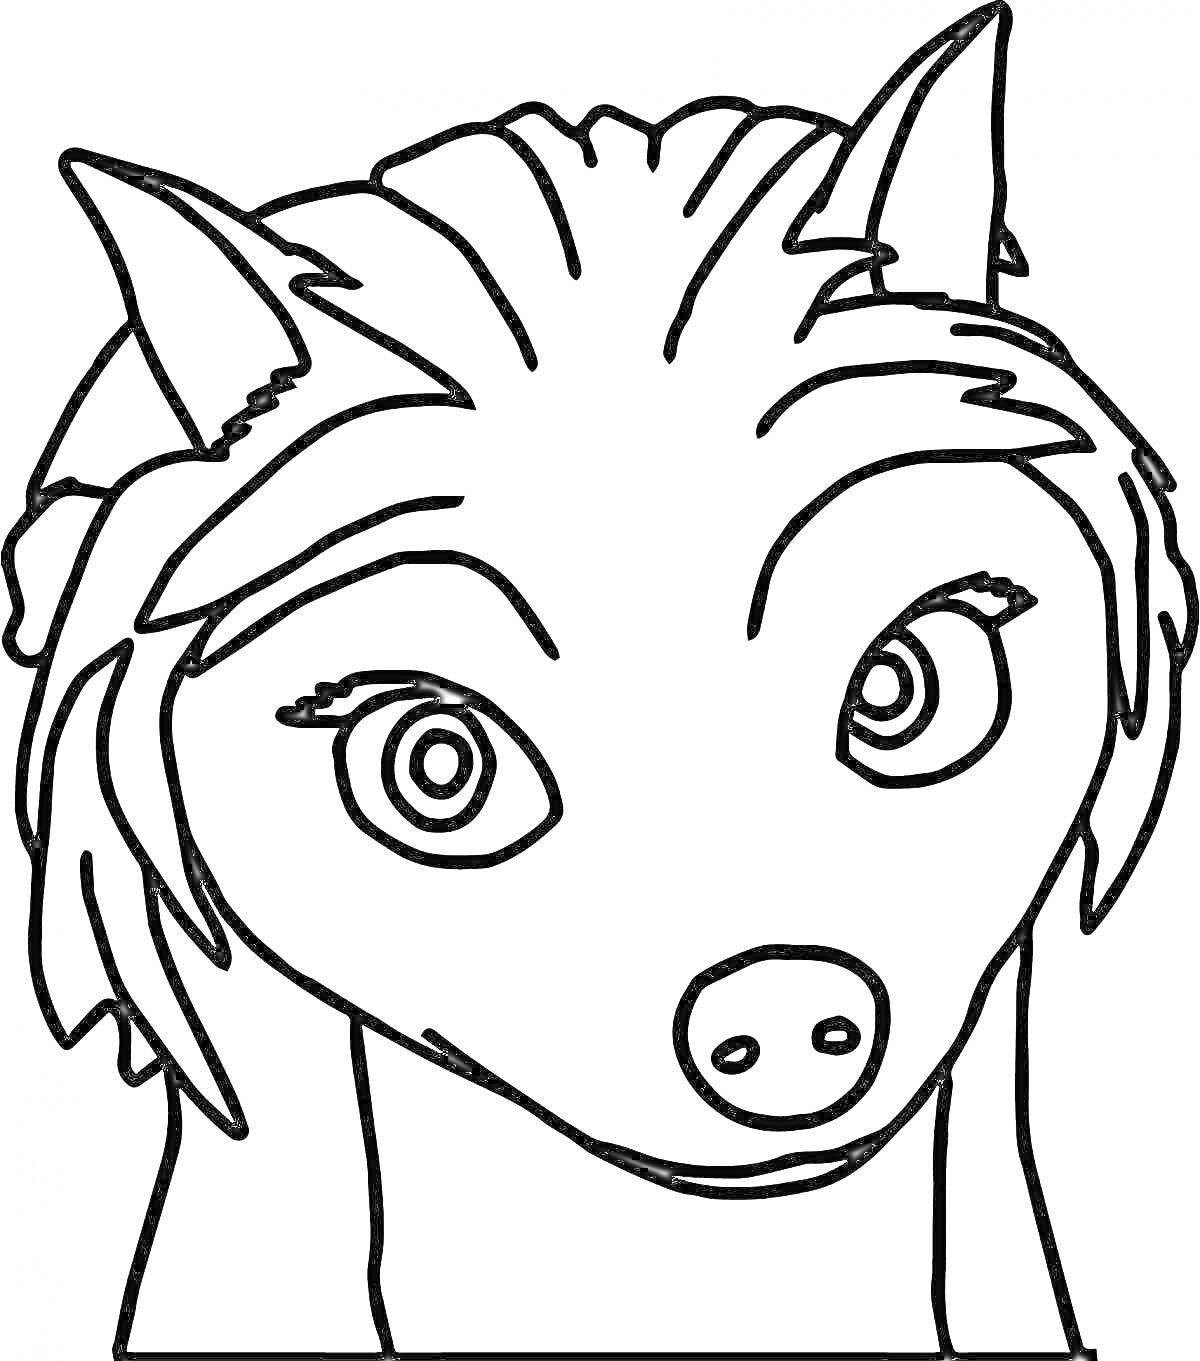 Раскраска Лицо альфа-волка, крупный план с большими глазами и большими ушами